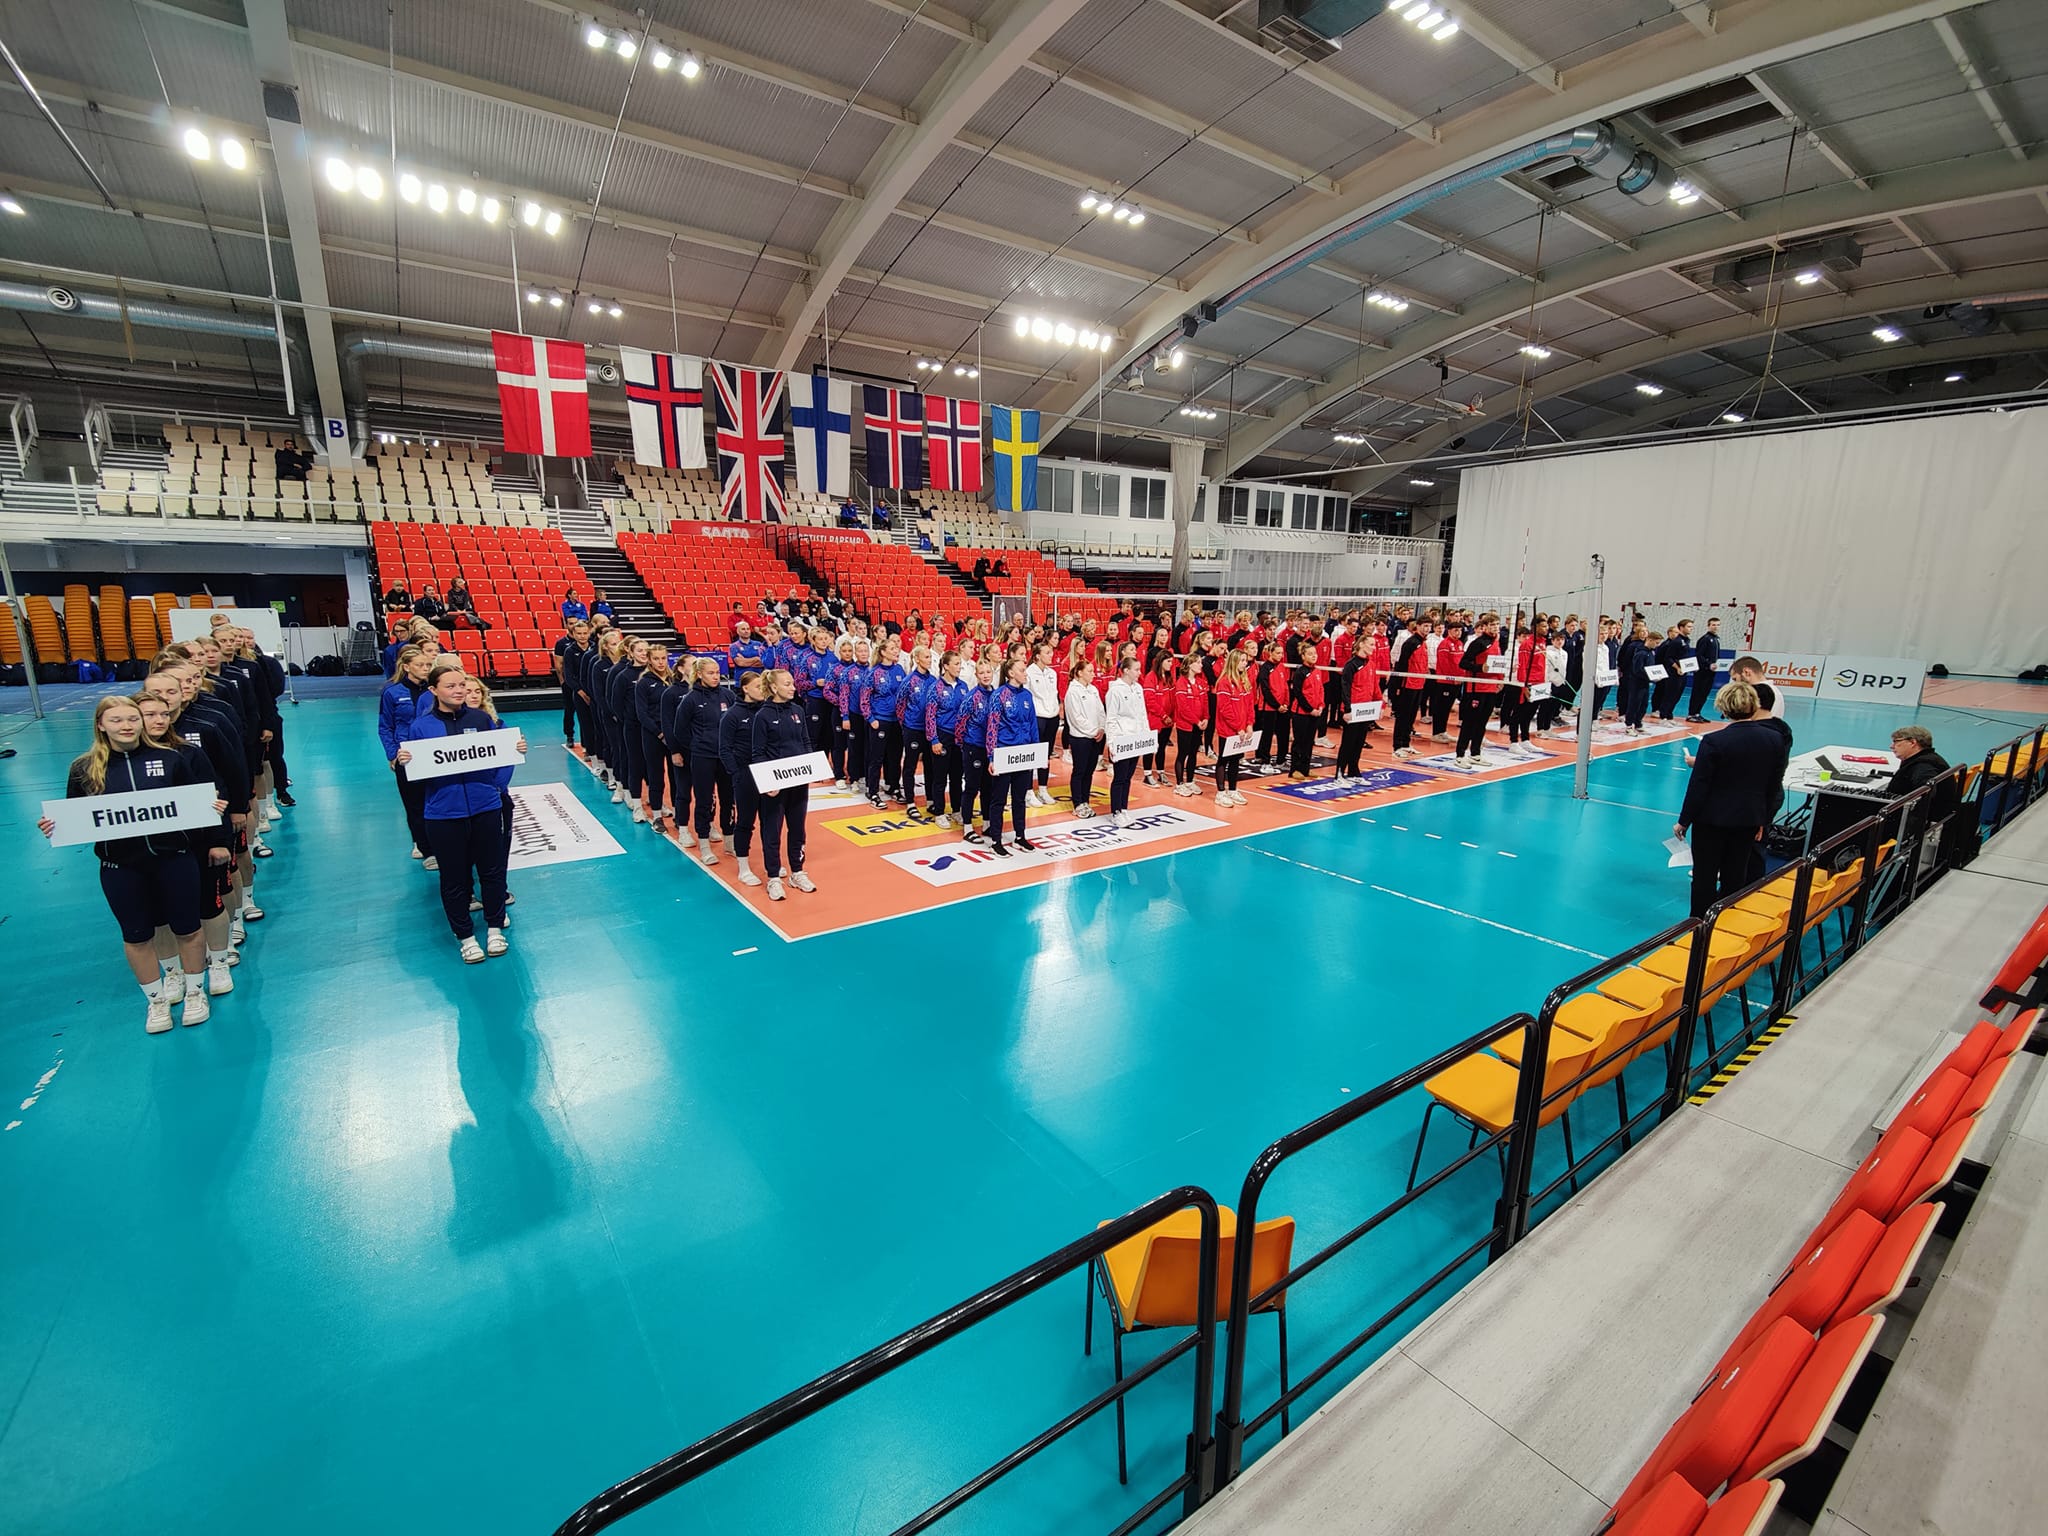 NEVZA U19 Championships in full swing in Rovaniemi CEV